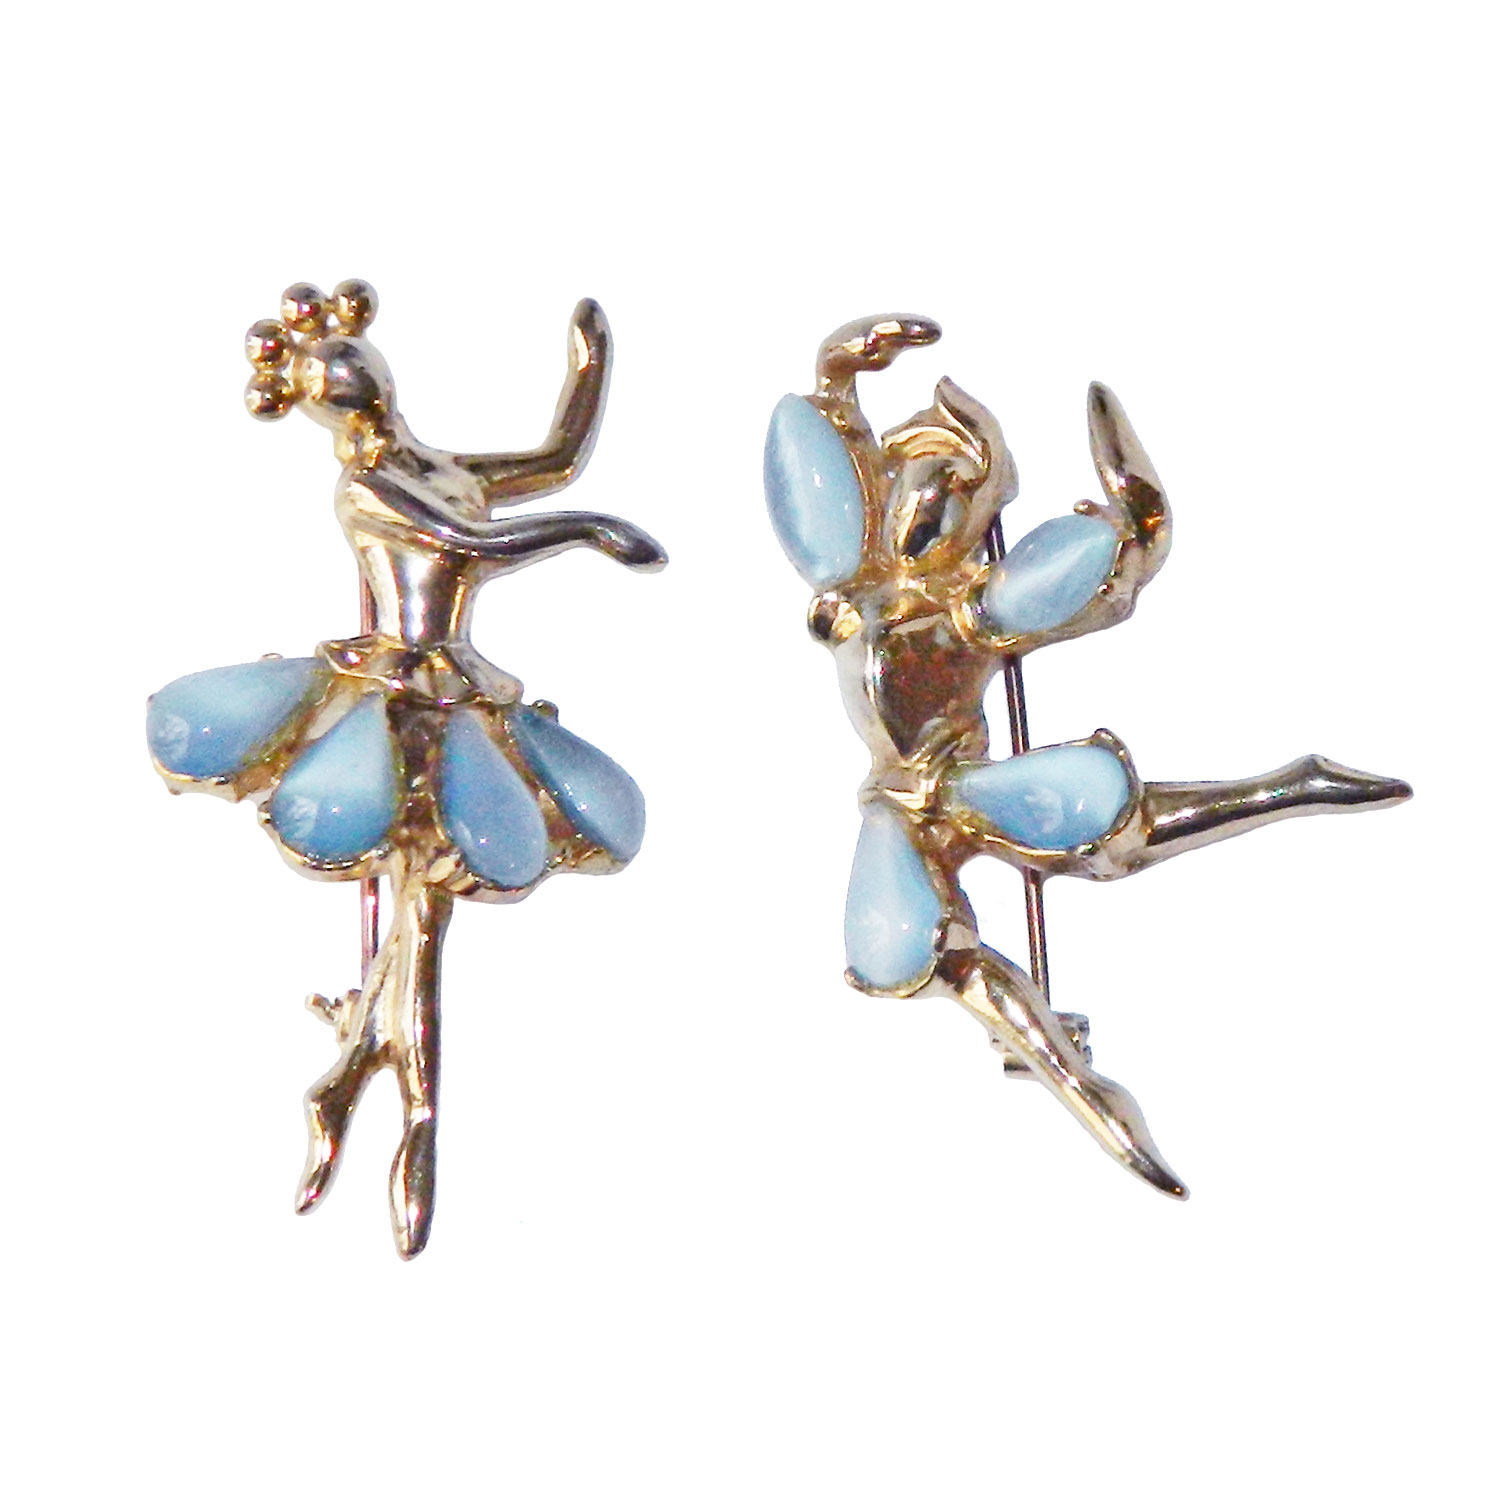 Trifari Petalettes ballet dancers brooch set